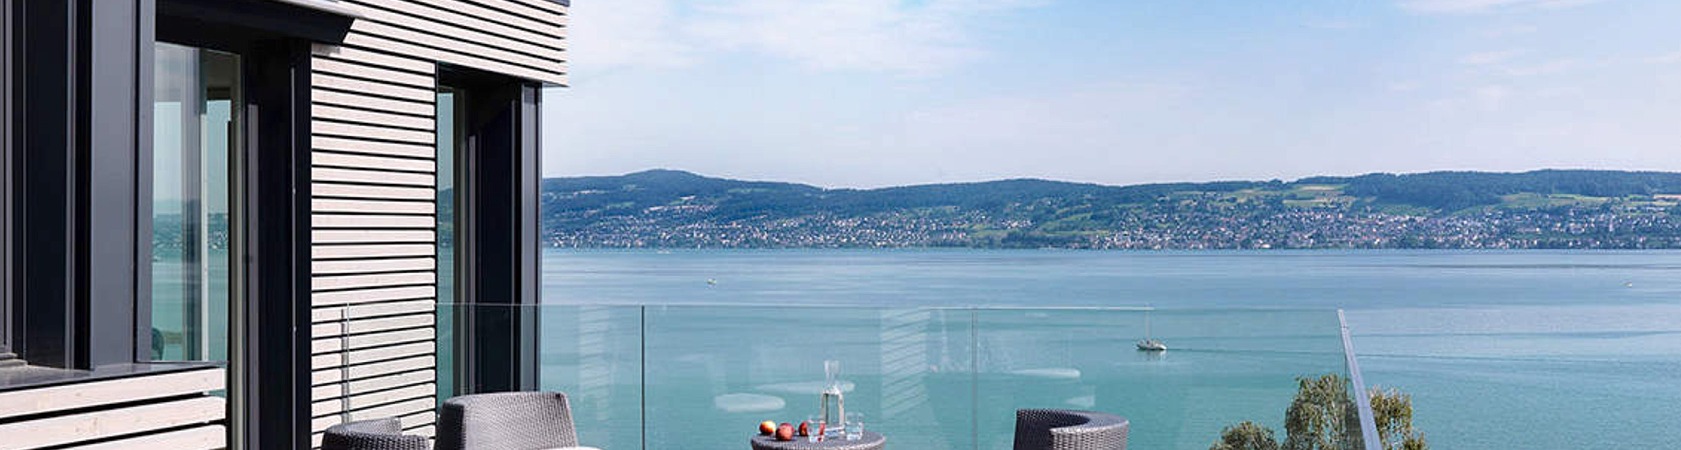 comment estimer prix bien immobilier suisse